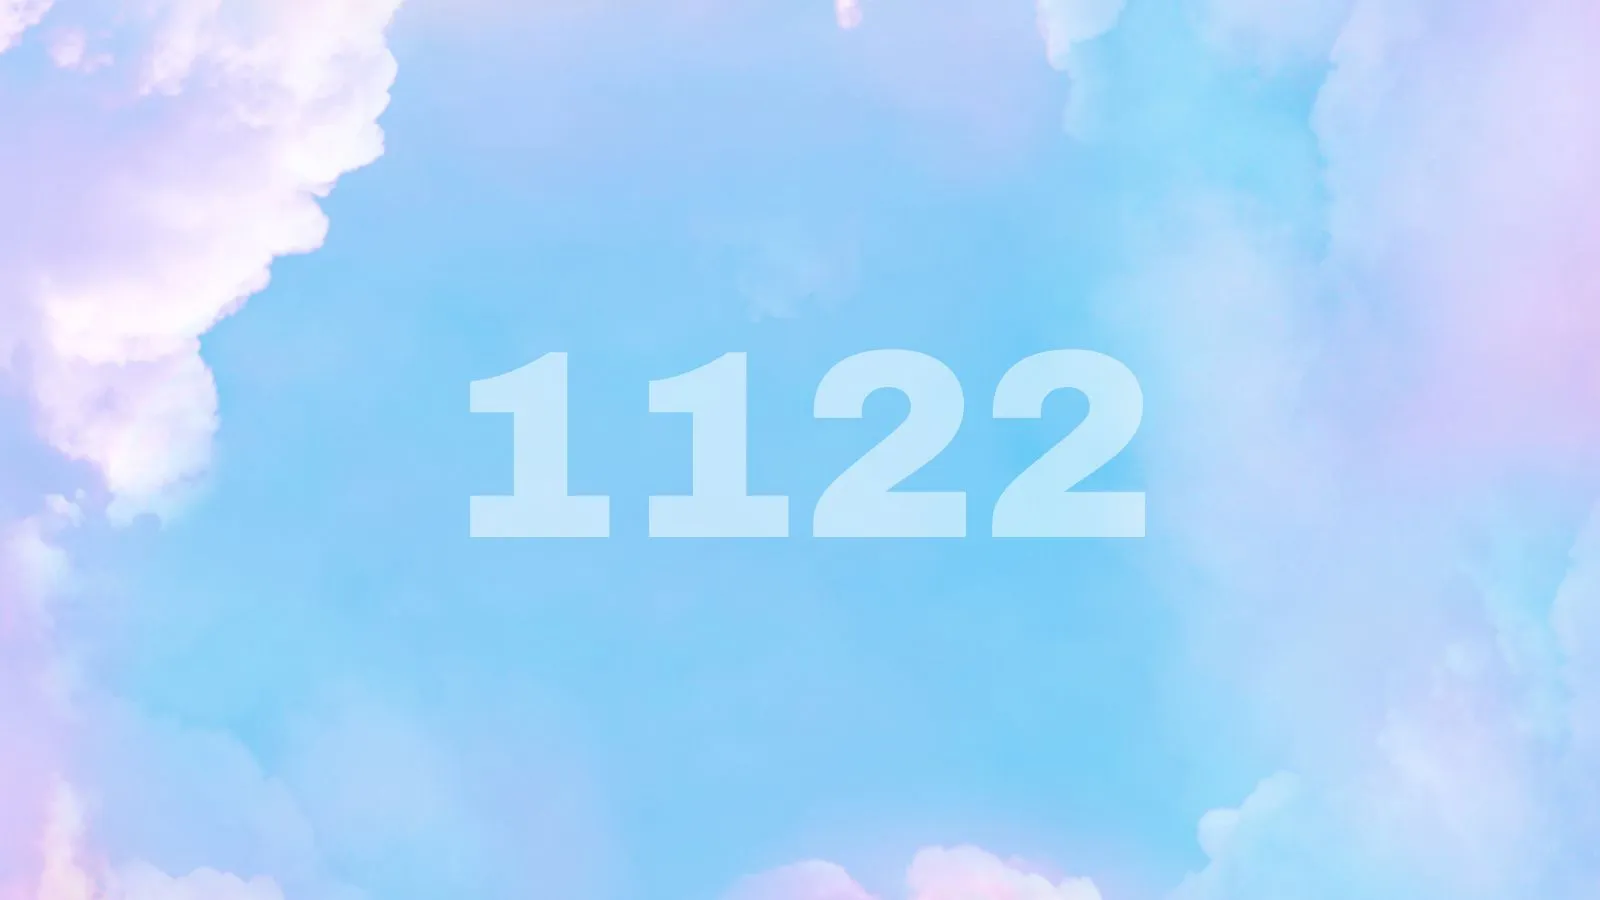 1122 angel number